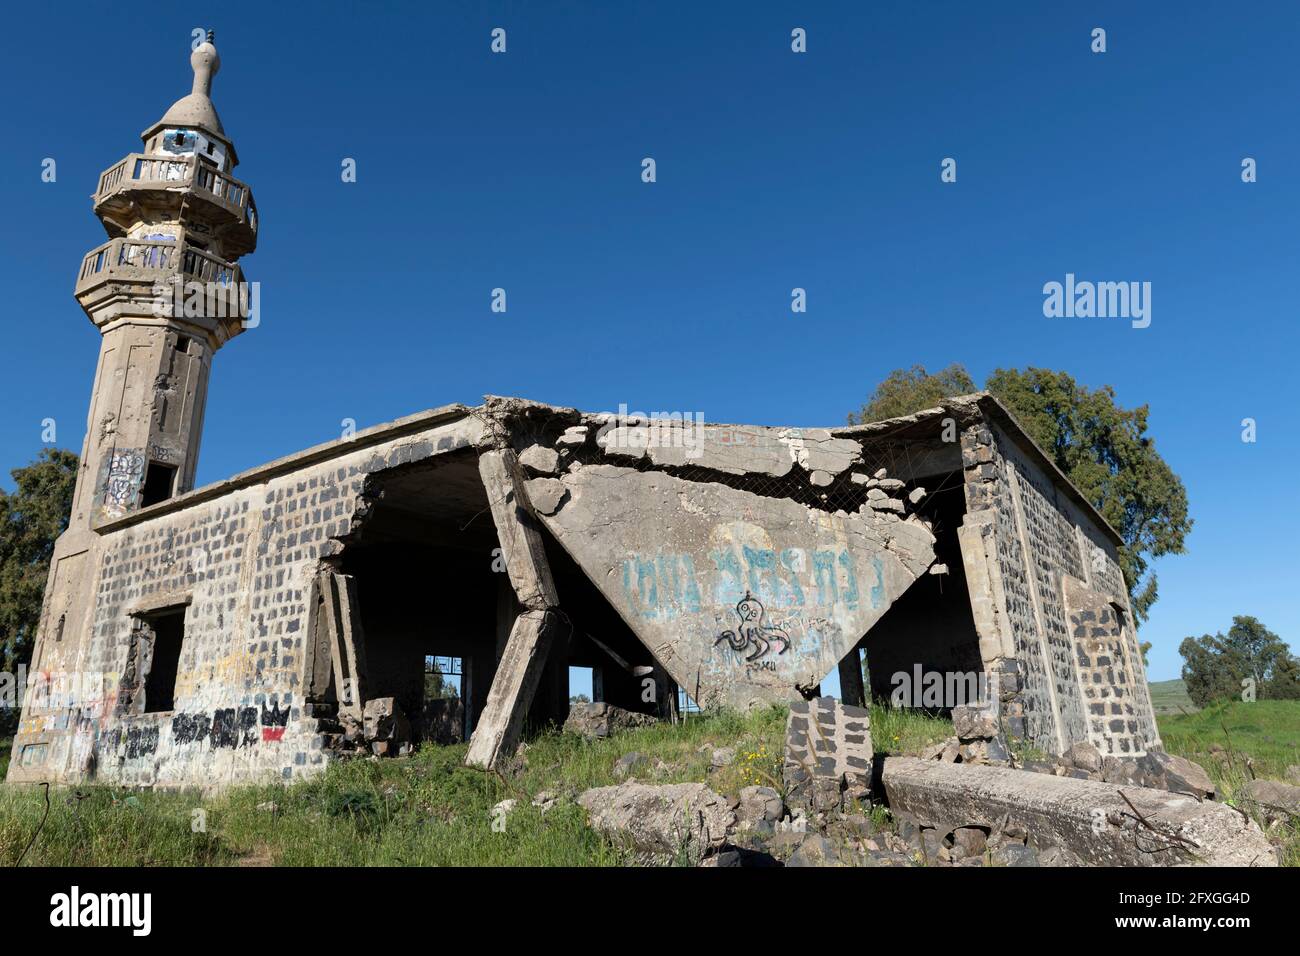 L'ancienne mosquée syrienne a été abandonnée pendant la guerre des six jours de 1967. Plateau du Golan, Israël Banque D'Images